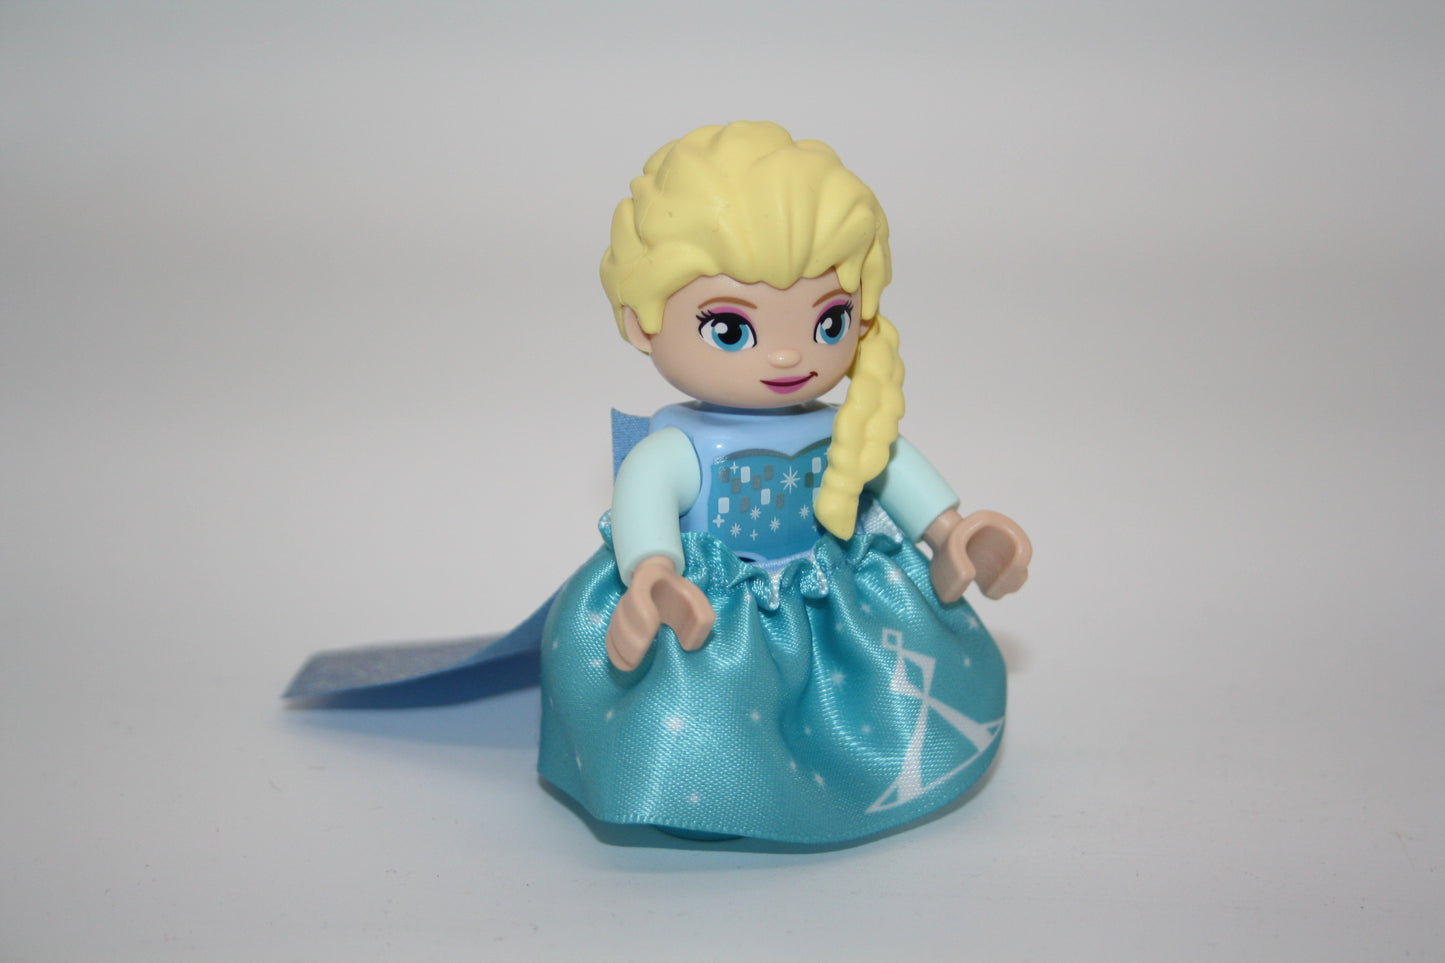 Duplo - Elsa die Eiskönigin aus Frozen - Disney Figur - neu/unbespielt